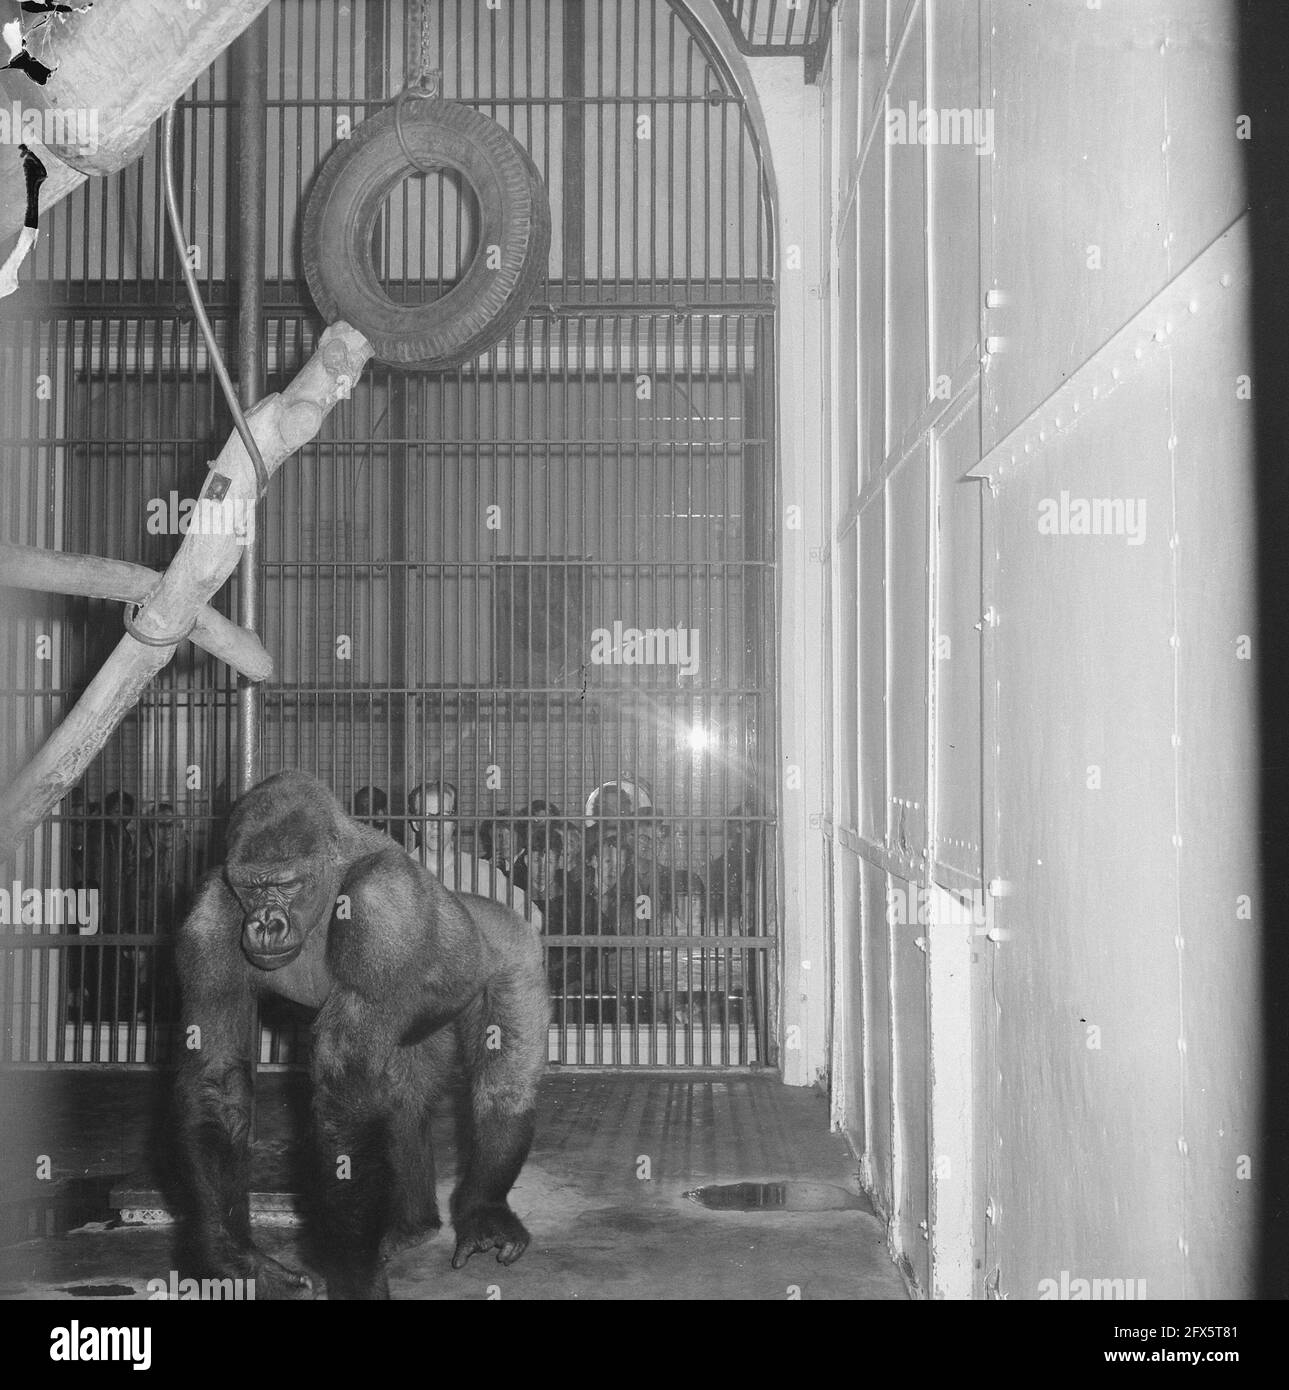 Gorilla Babar in Artis heiratete Gorilla-Dame in der Provinz Nordholland, 16. April 1963, Zoos, Niederlande, 20. Jahrhundert Presseagentur Foto, Nachrichten zu erinnern, Dokumentarfilm, historische Fotografie 1945-1990, visuelle Geschichten, Menschliche Geschichte des zwanzigsten Jahrhunderts, Momente in der Zeit festzuhalten Stockfoto